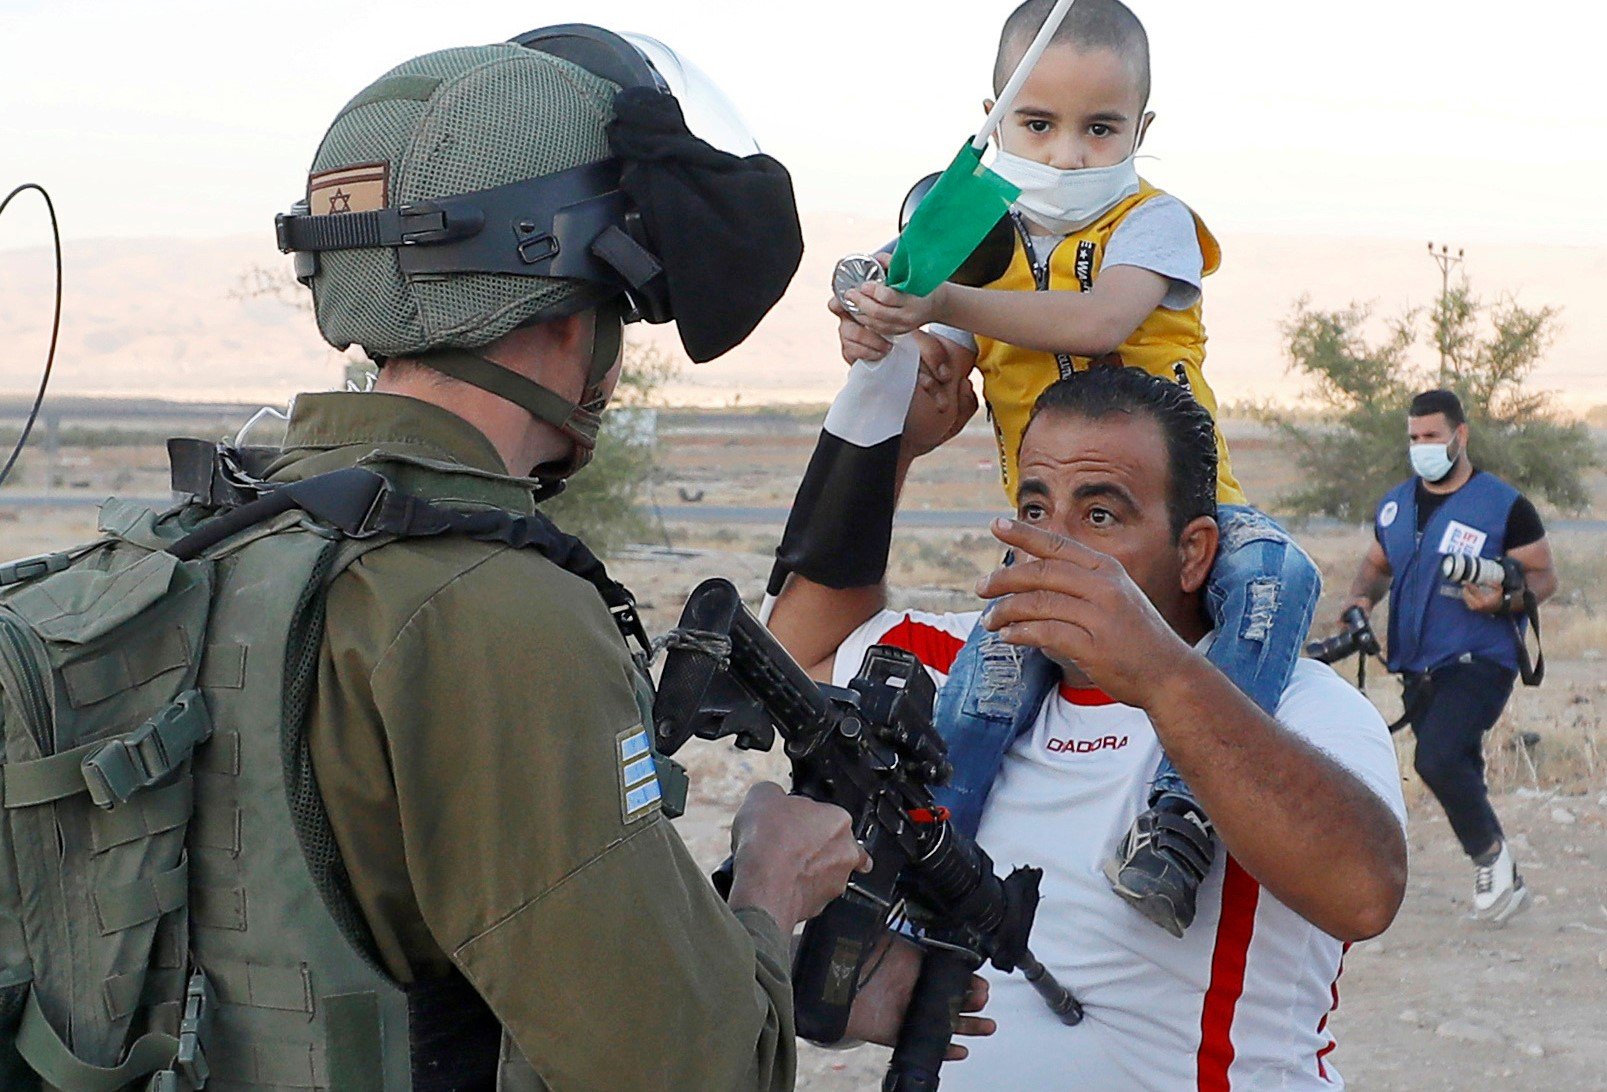 Un Palestinien avec son enfant face à un soldat israélien pendant une manifestation contre le projet d’Israël d’annexer des régions de Cisjordanie occupée, dans la vallée du Jourdain le 24 juin (Reuters)